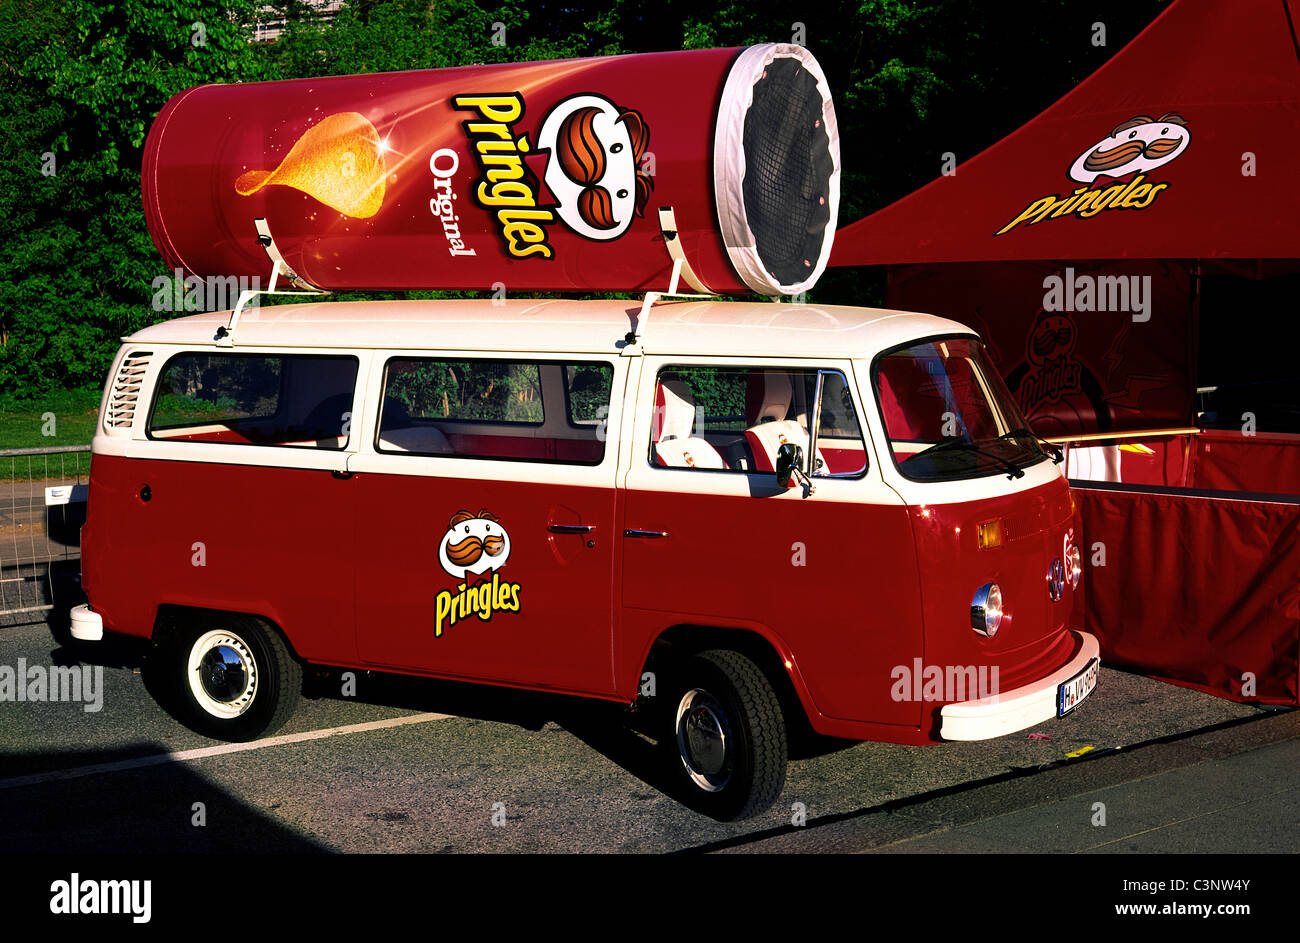 Volkswagen camper van usada como espacio de publicidad comercial de Procter & Gamble. Patatas fritas Pringles en Sankt Pauli en Hamburgo. Foto de stock